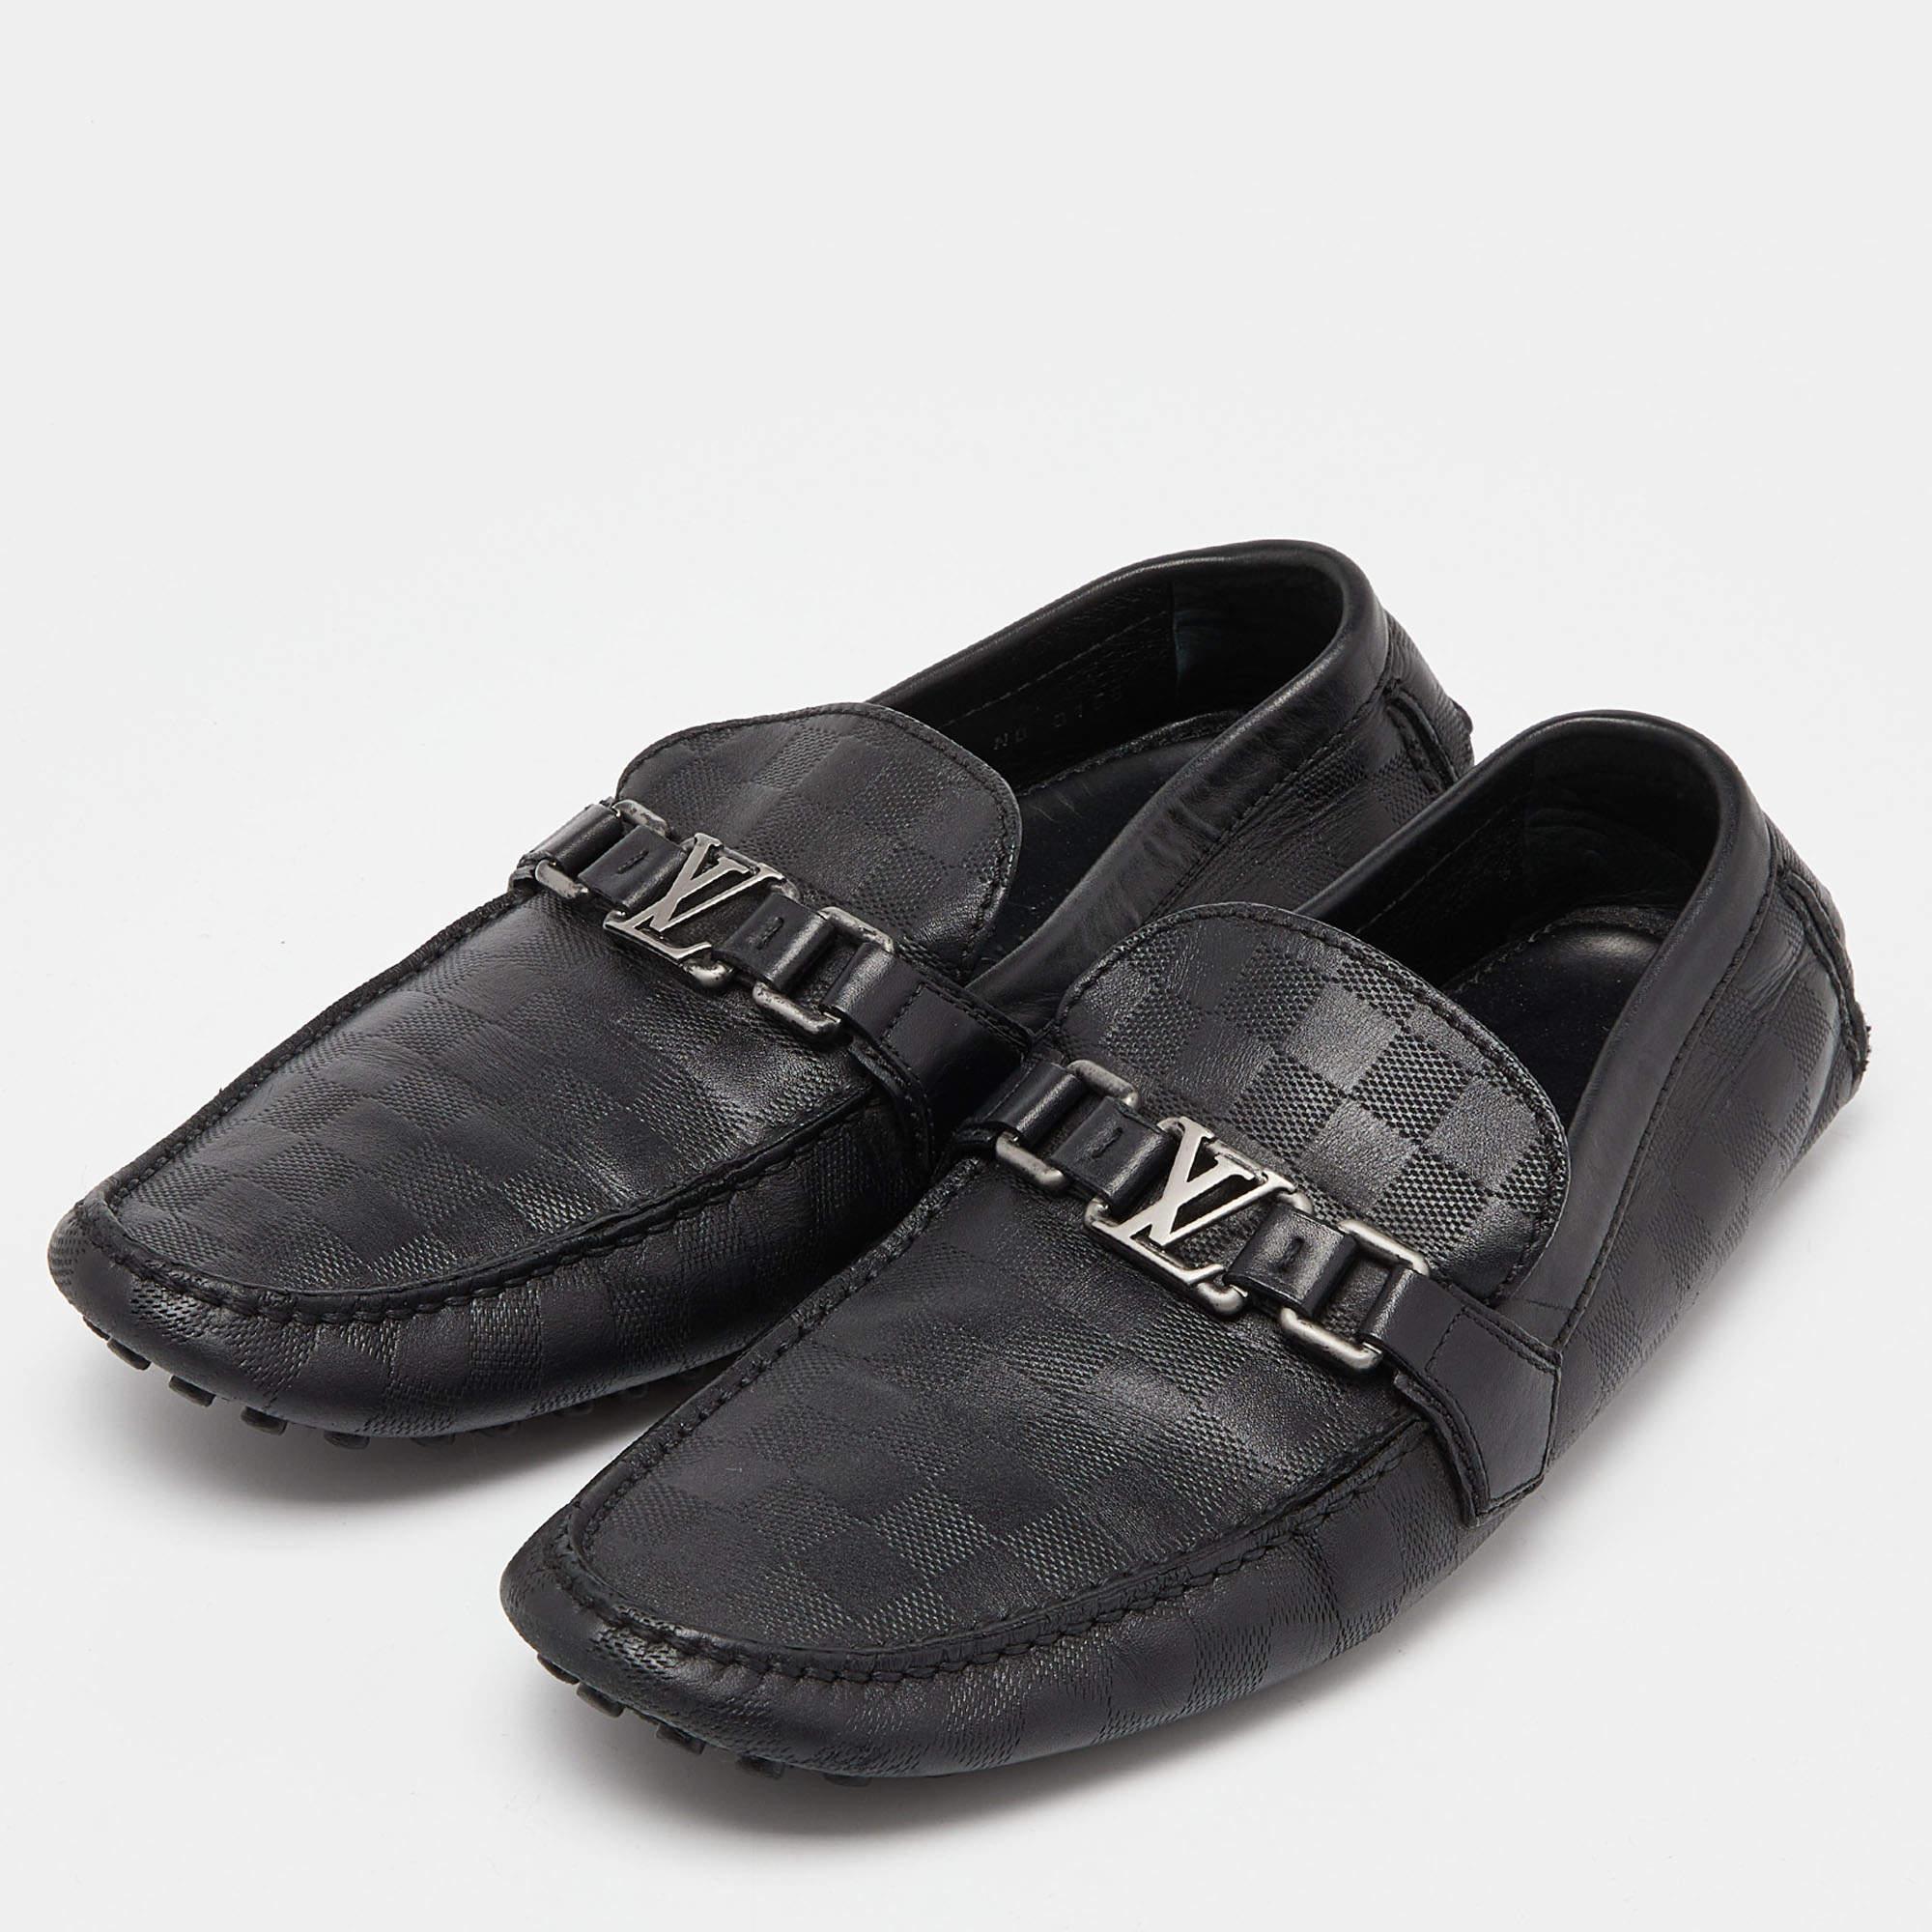 Praktisch, modisch und langlebig - diese Louis Vuitton Loafers sind sorgfältig gefertigt, um Ihren täglichen Stil zu begleiten. Sie werden aus den besten MATERIALEN hergestellt und sind ein wertvoller Kauf.

